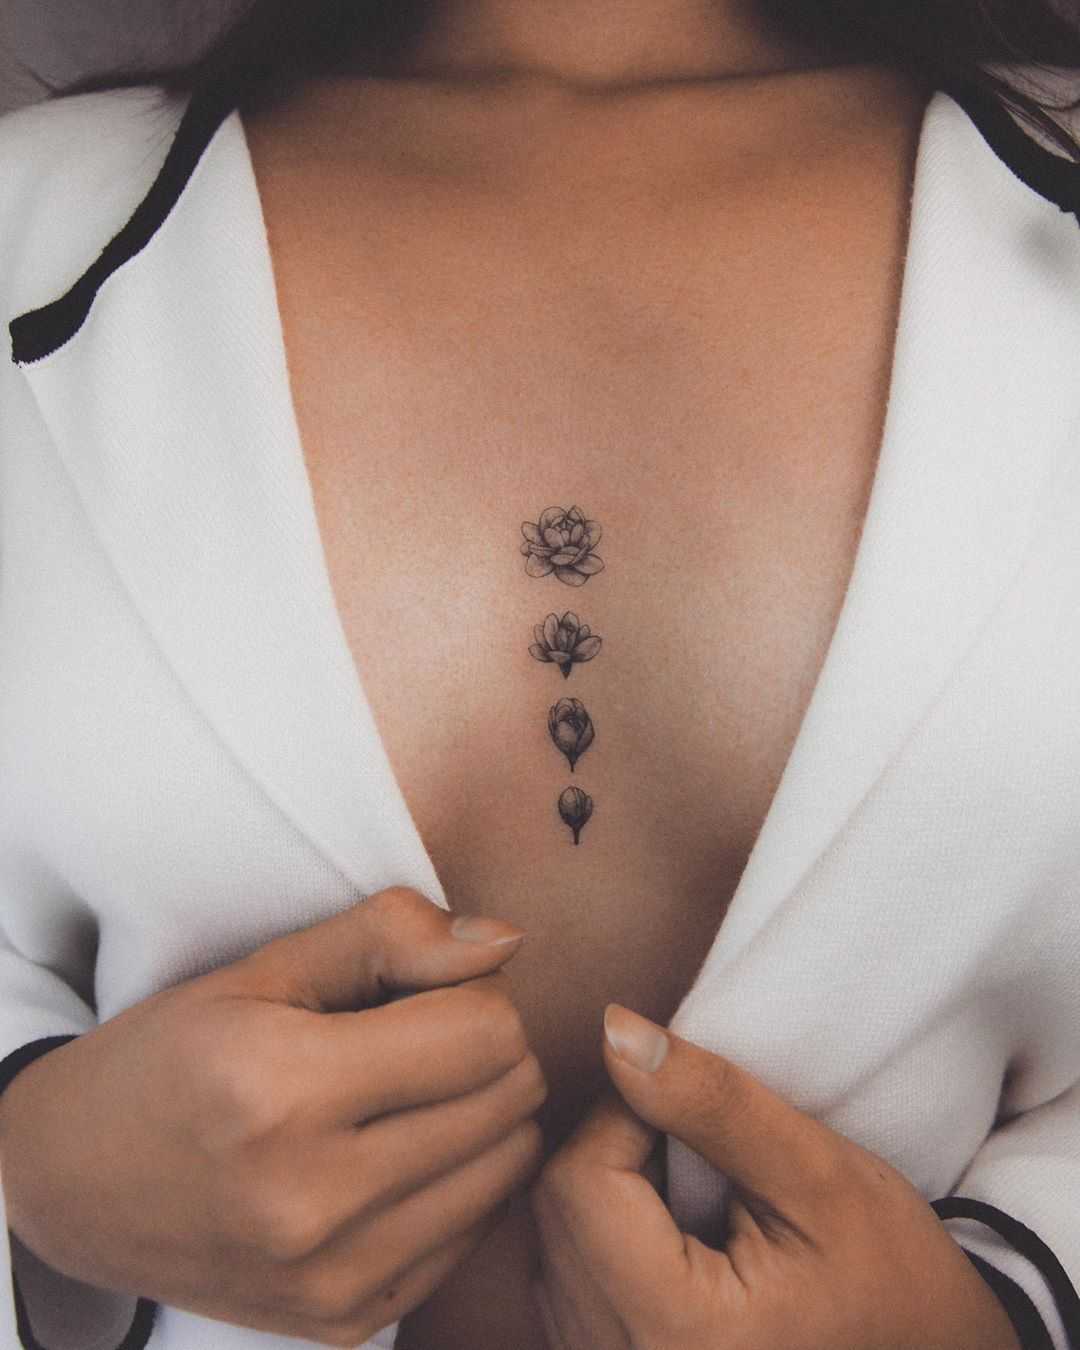 Blooming Sampaguita tattoo by @ghinkos